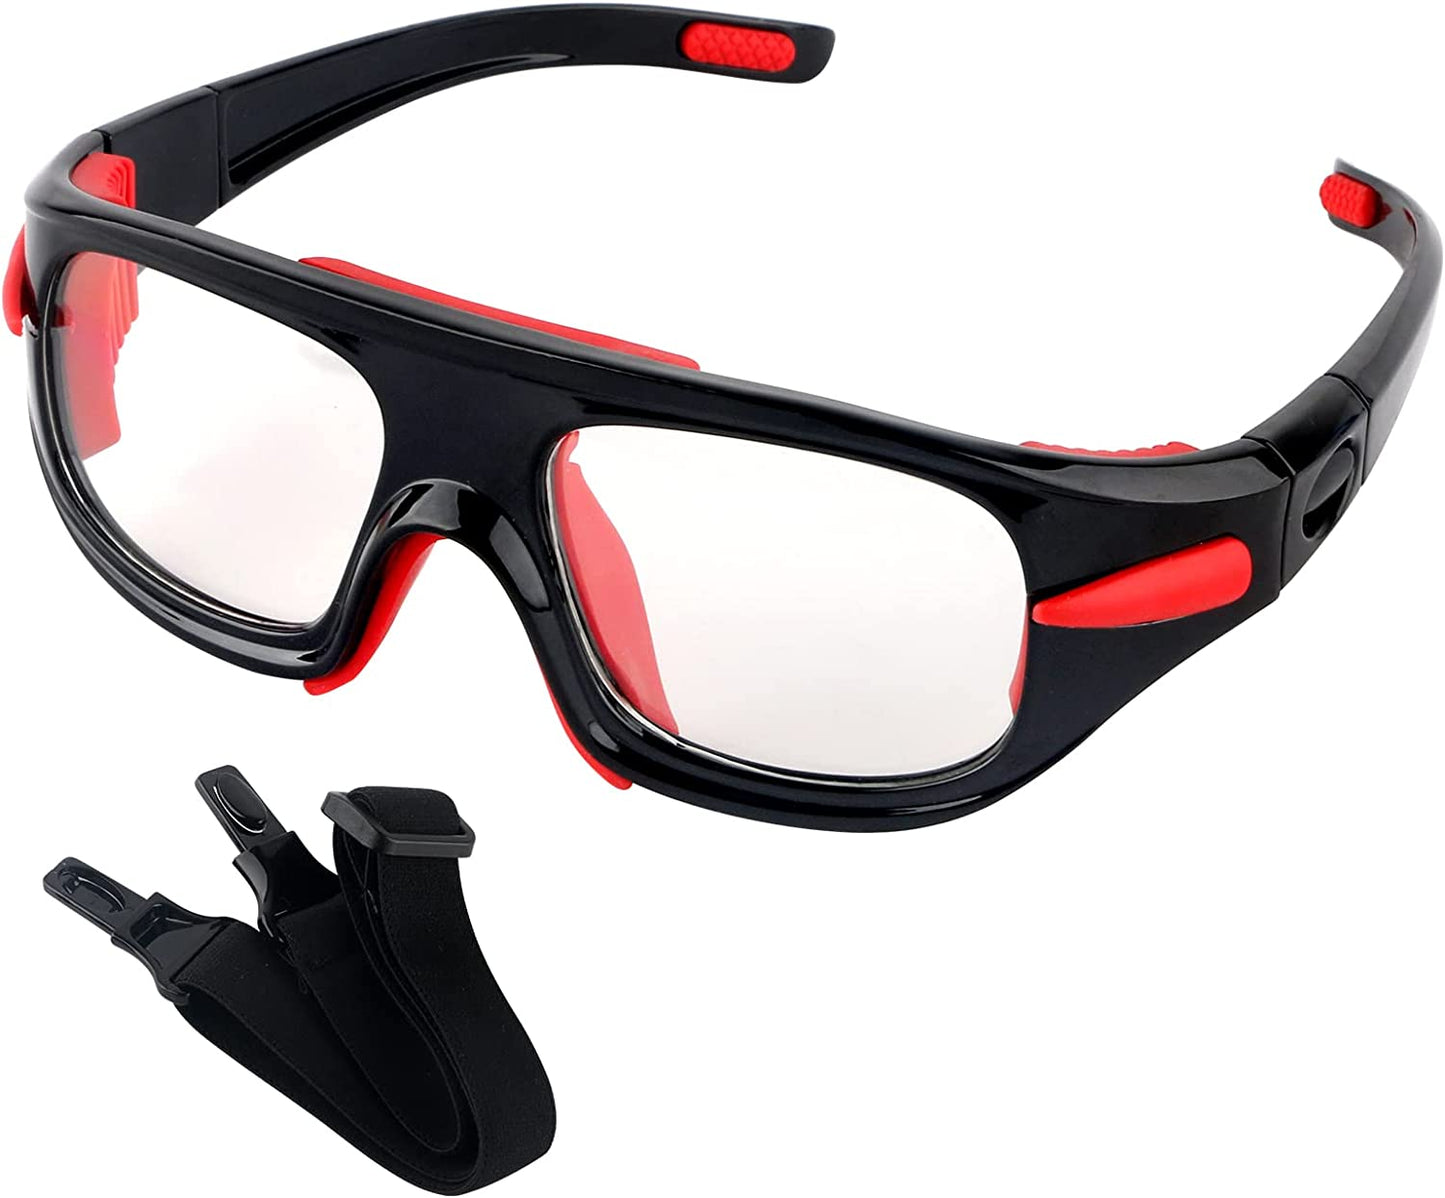 Prescription Sports Sunglasses with Adjustable Strap Black